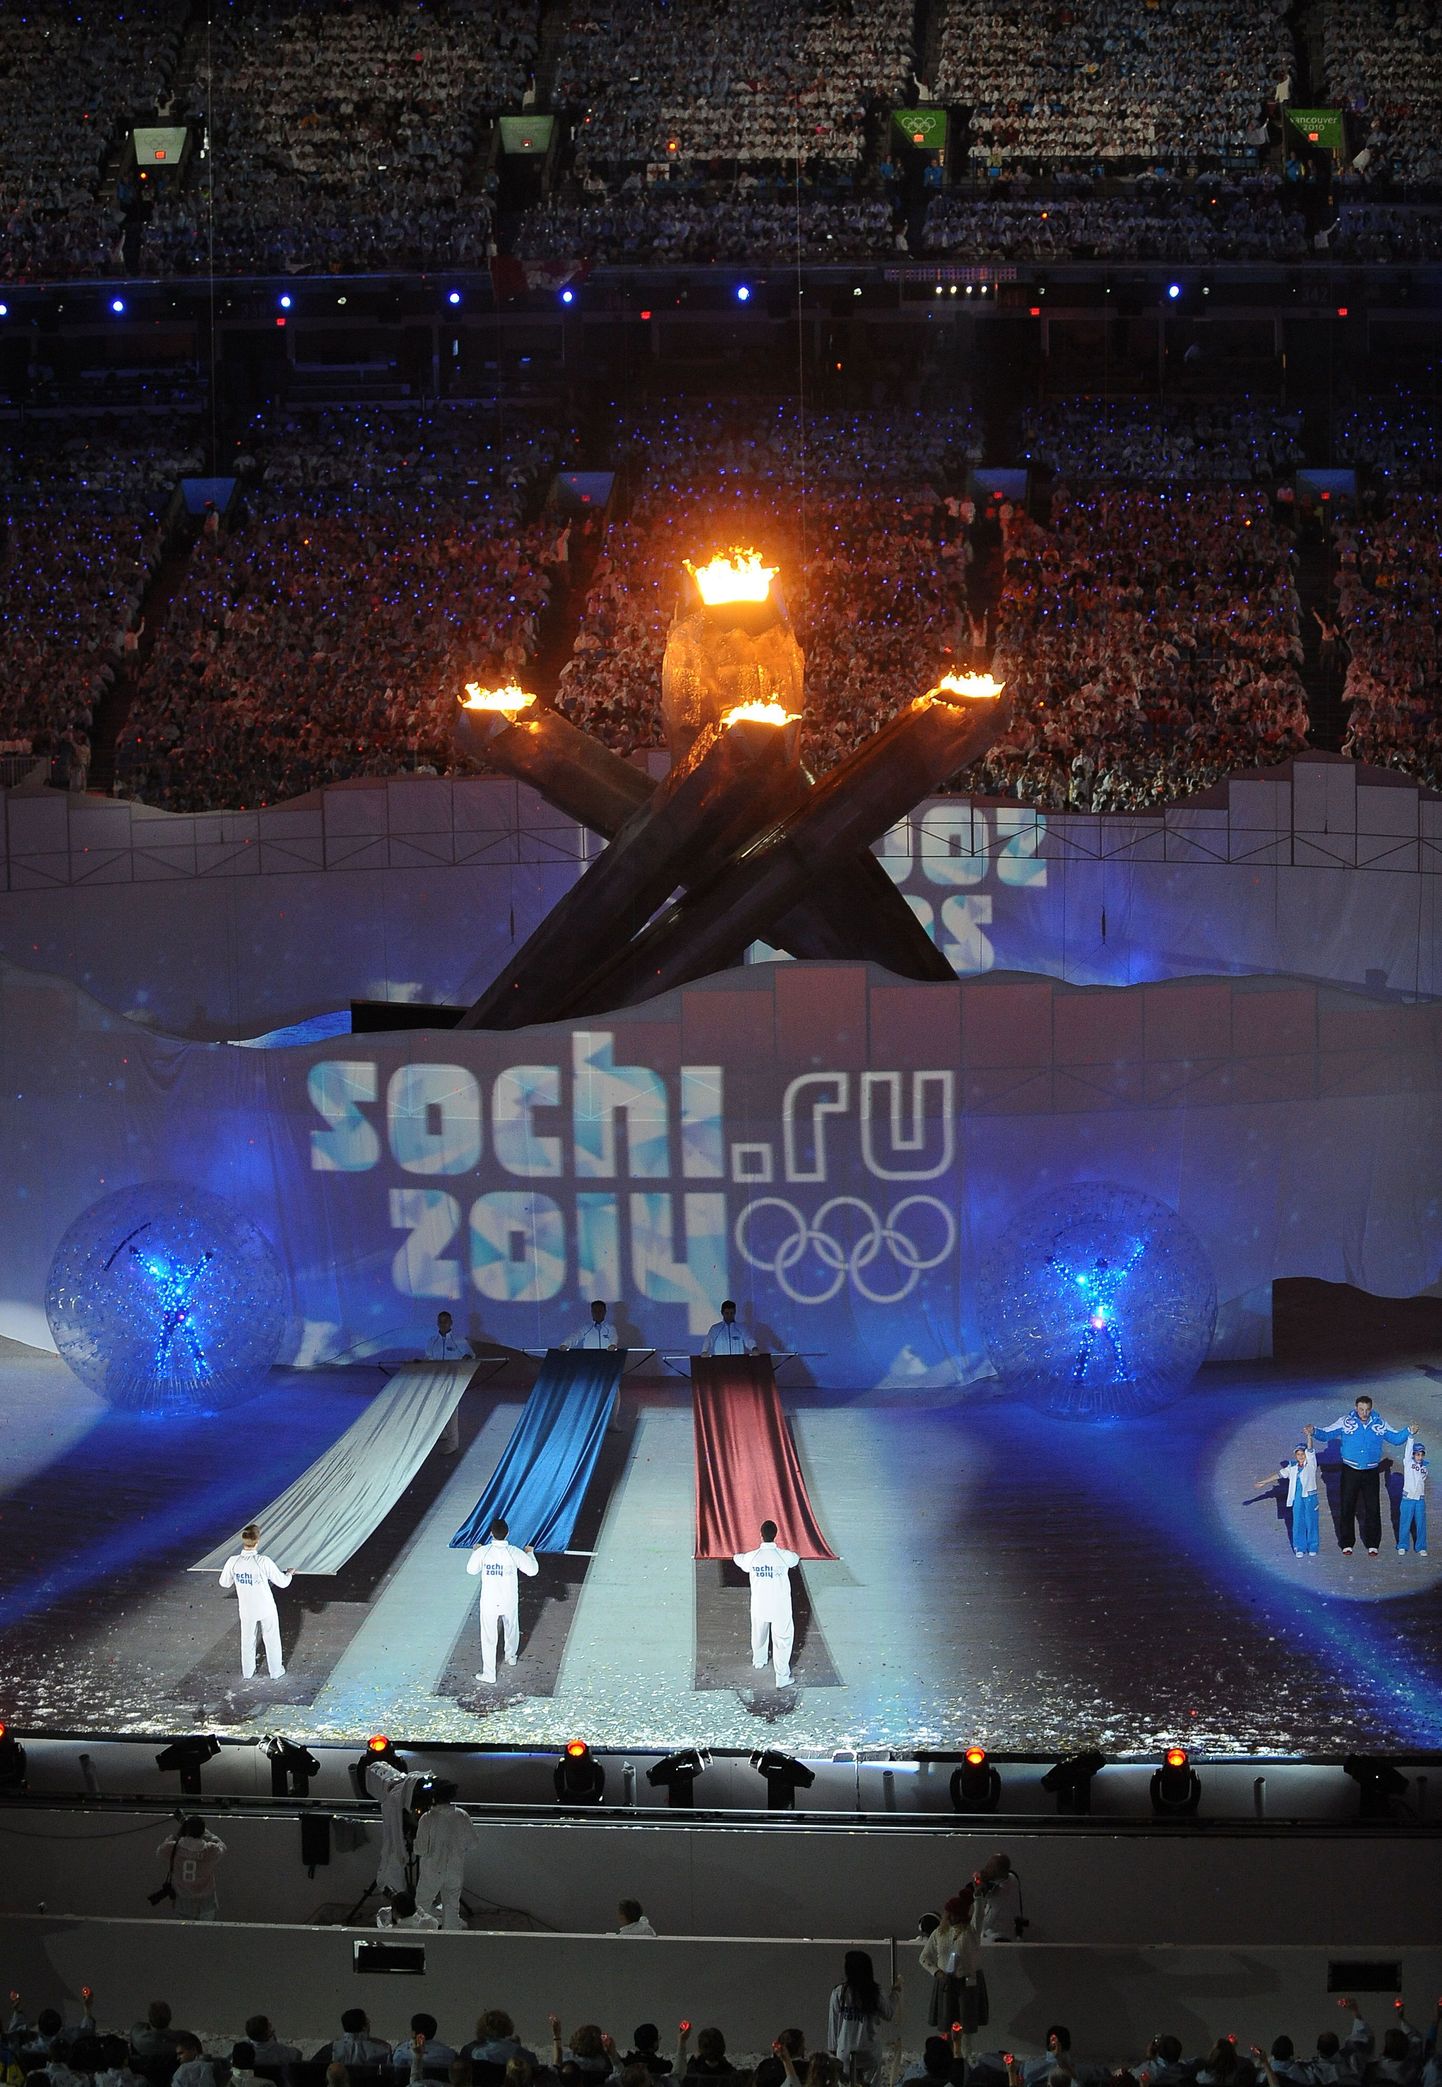 Церемония закрытия Олимпийских игр в Ванкувере. Представление Сочи - столицы Олимпиады 2014 года.